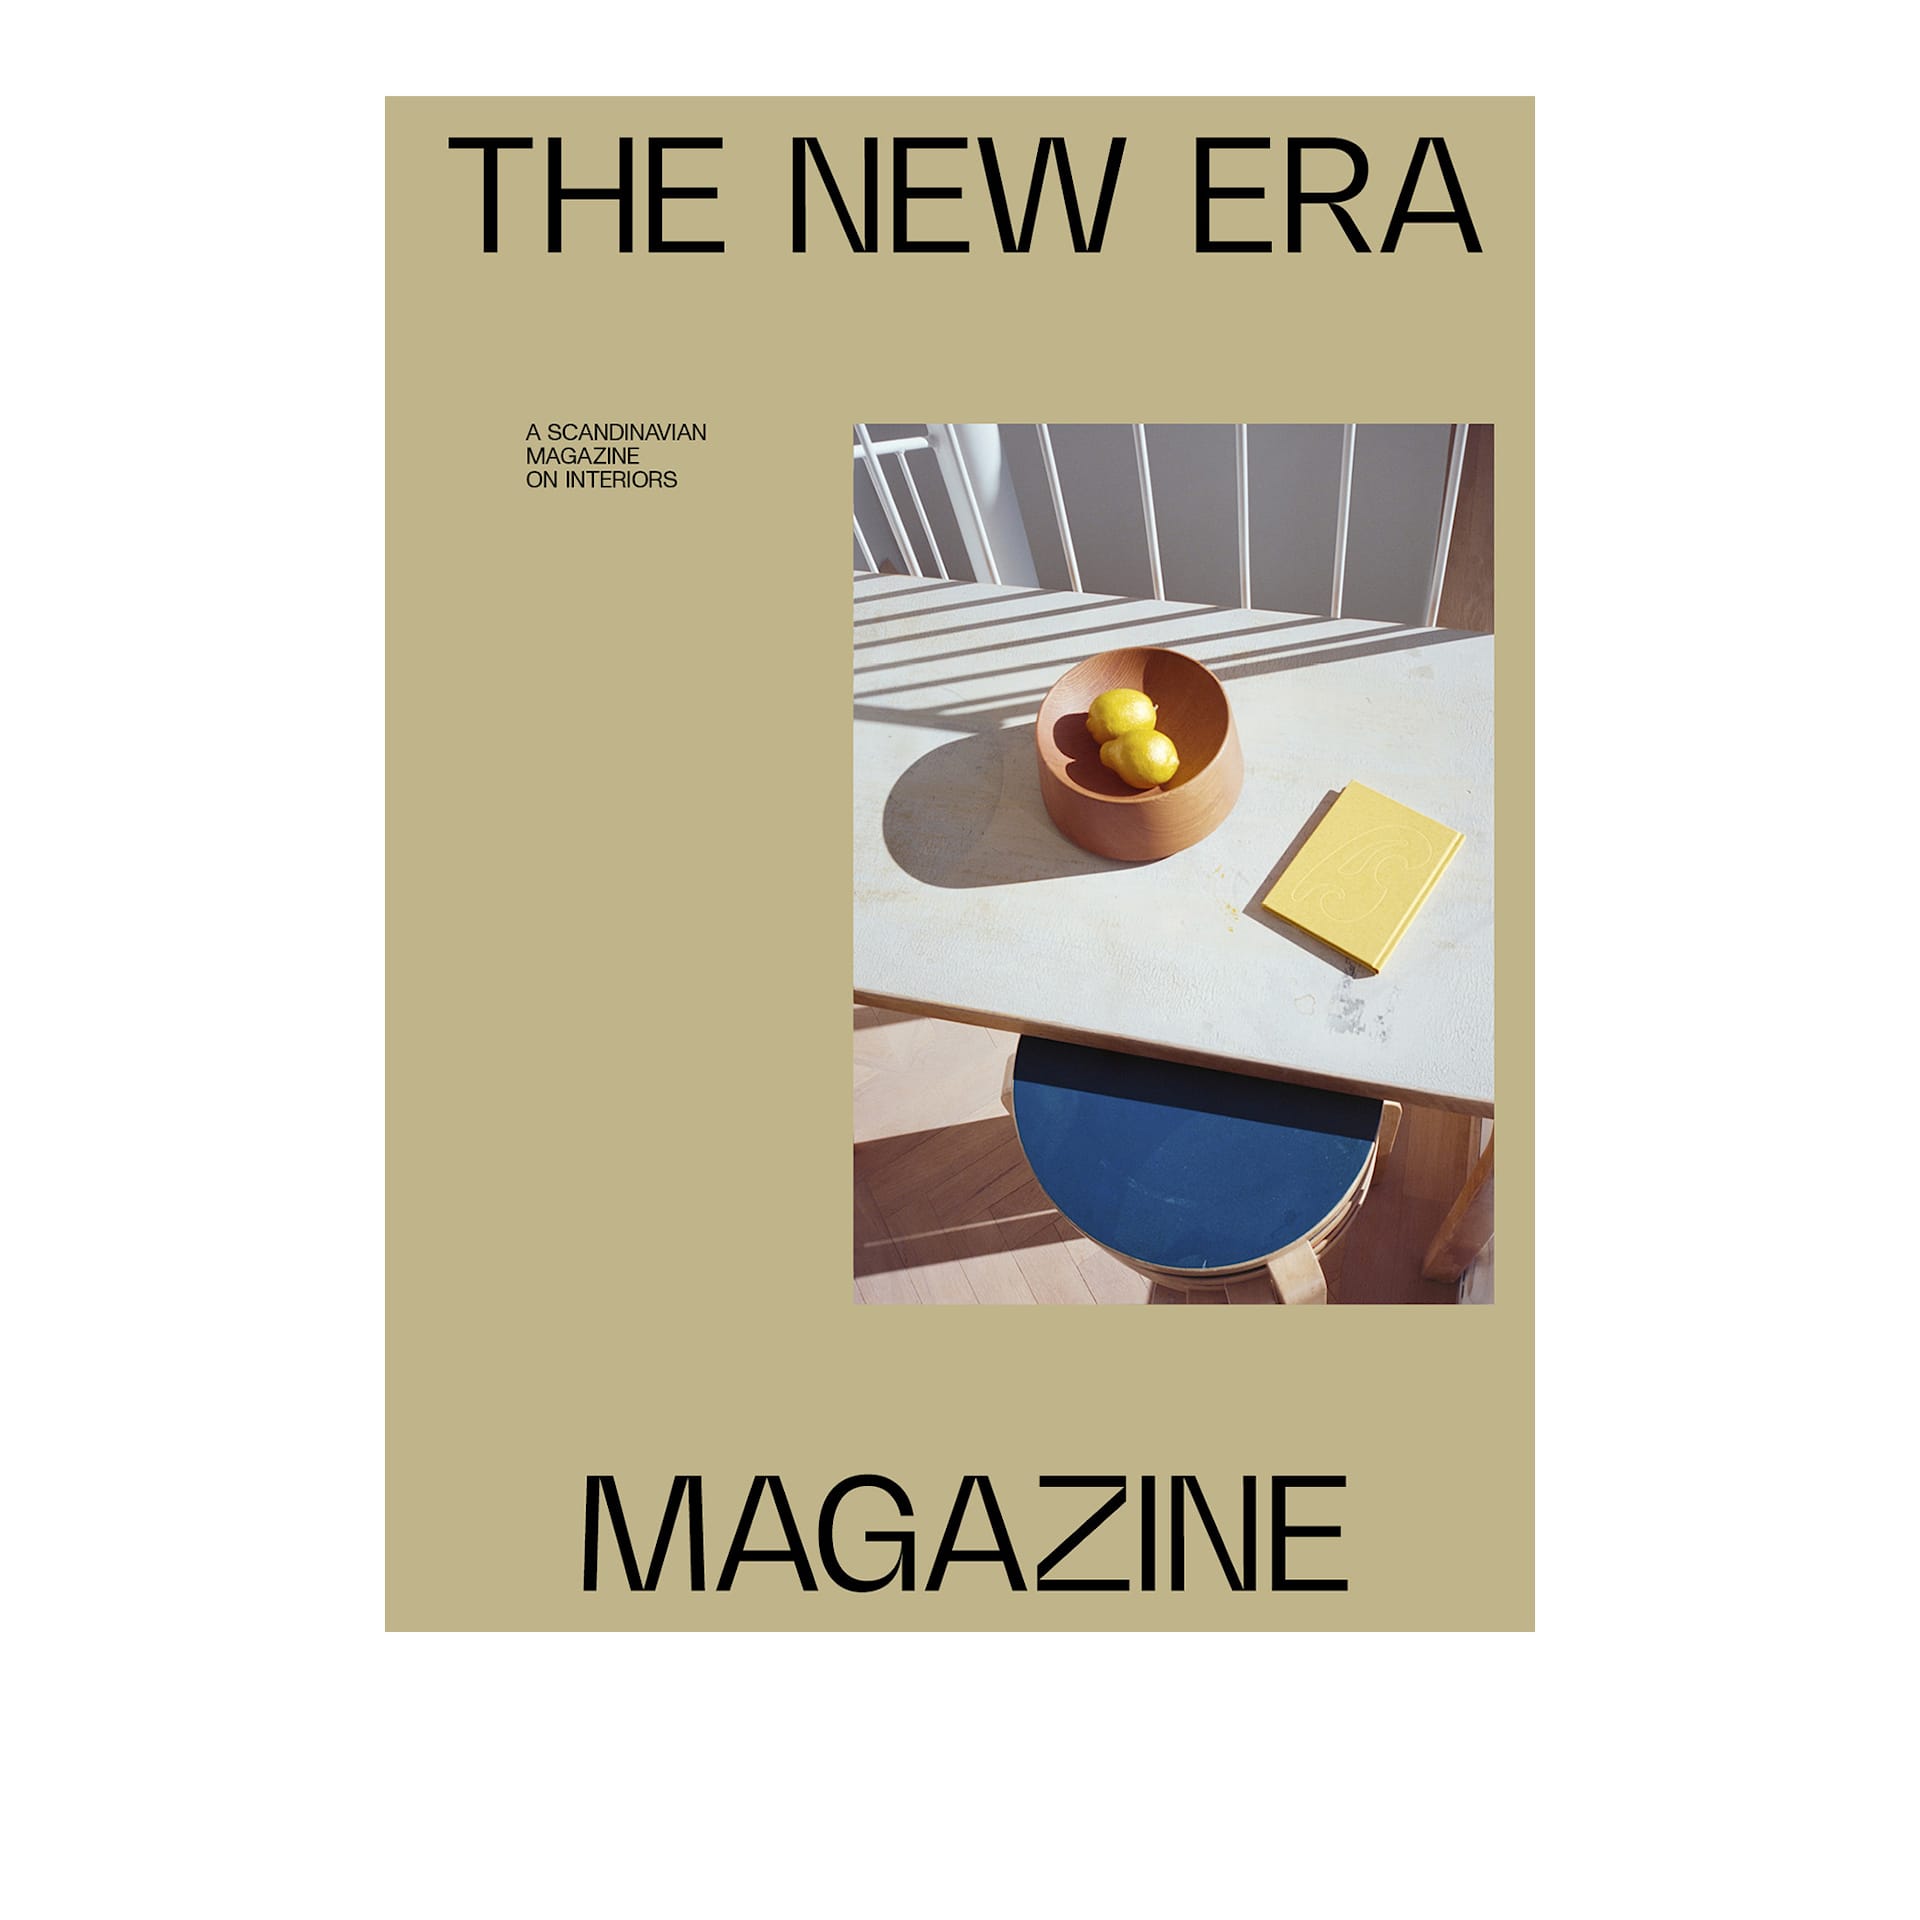 The New Era Magazine Issue 04 - The New Era - NO GA